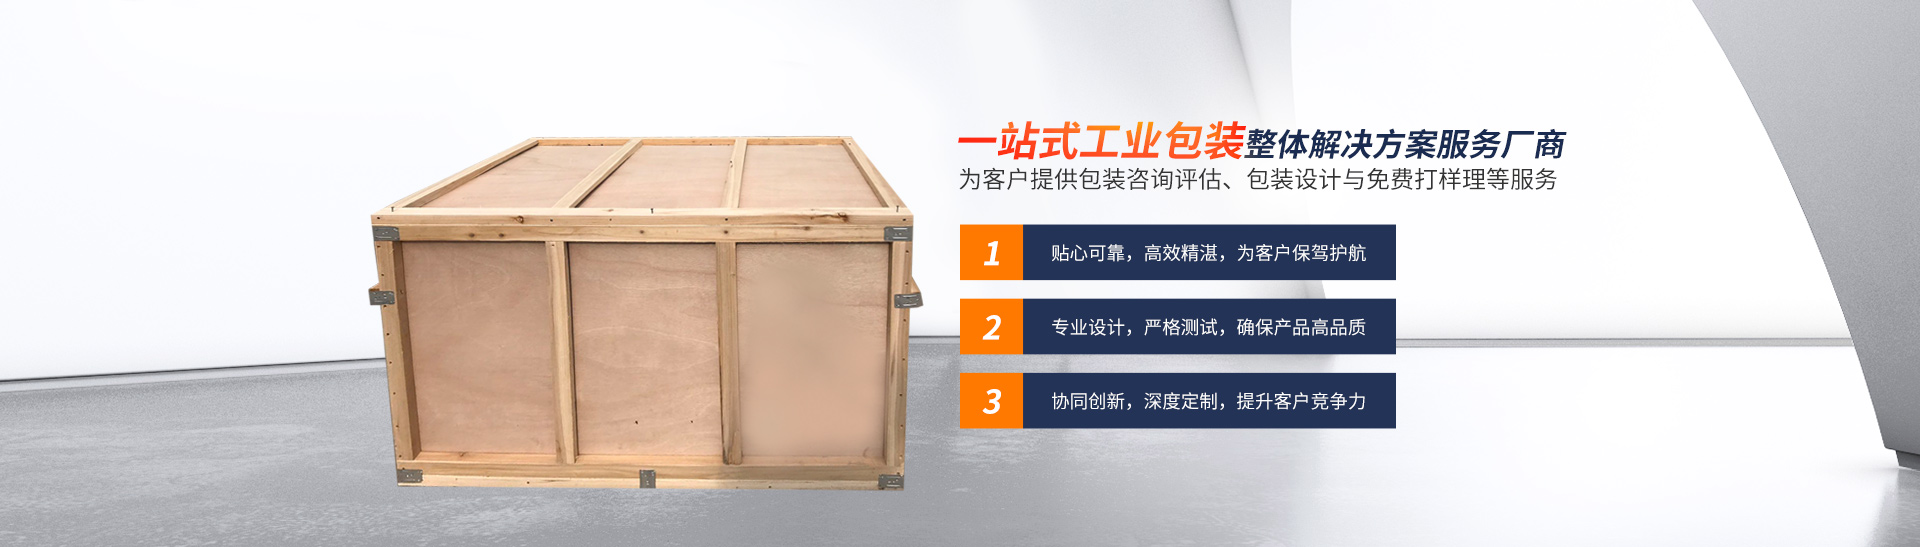 湖南省全亞物流裝備制造有限公司_長沙托盤生產|長沙木箱供應|特種包裝